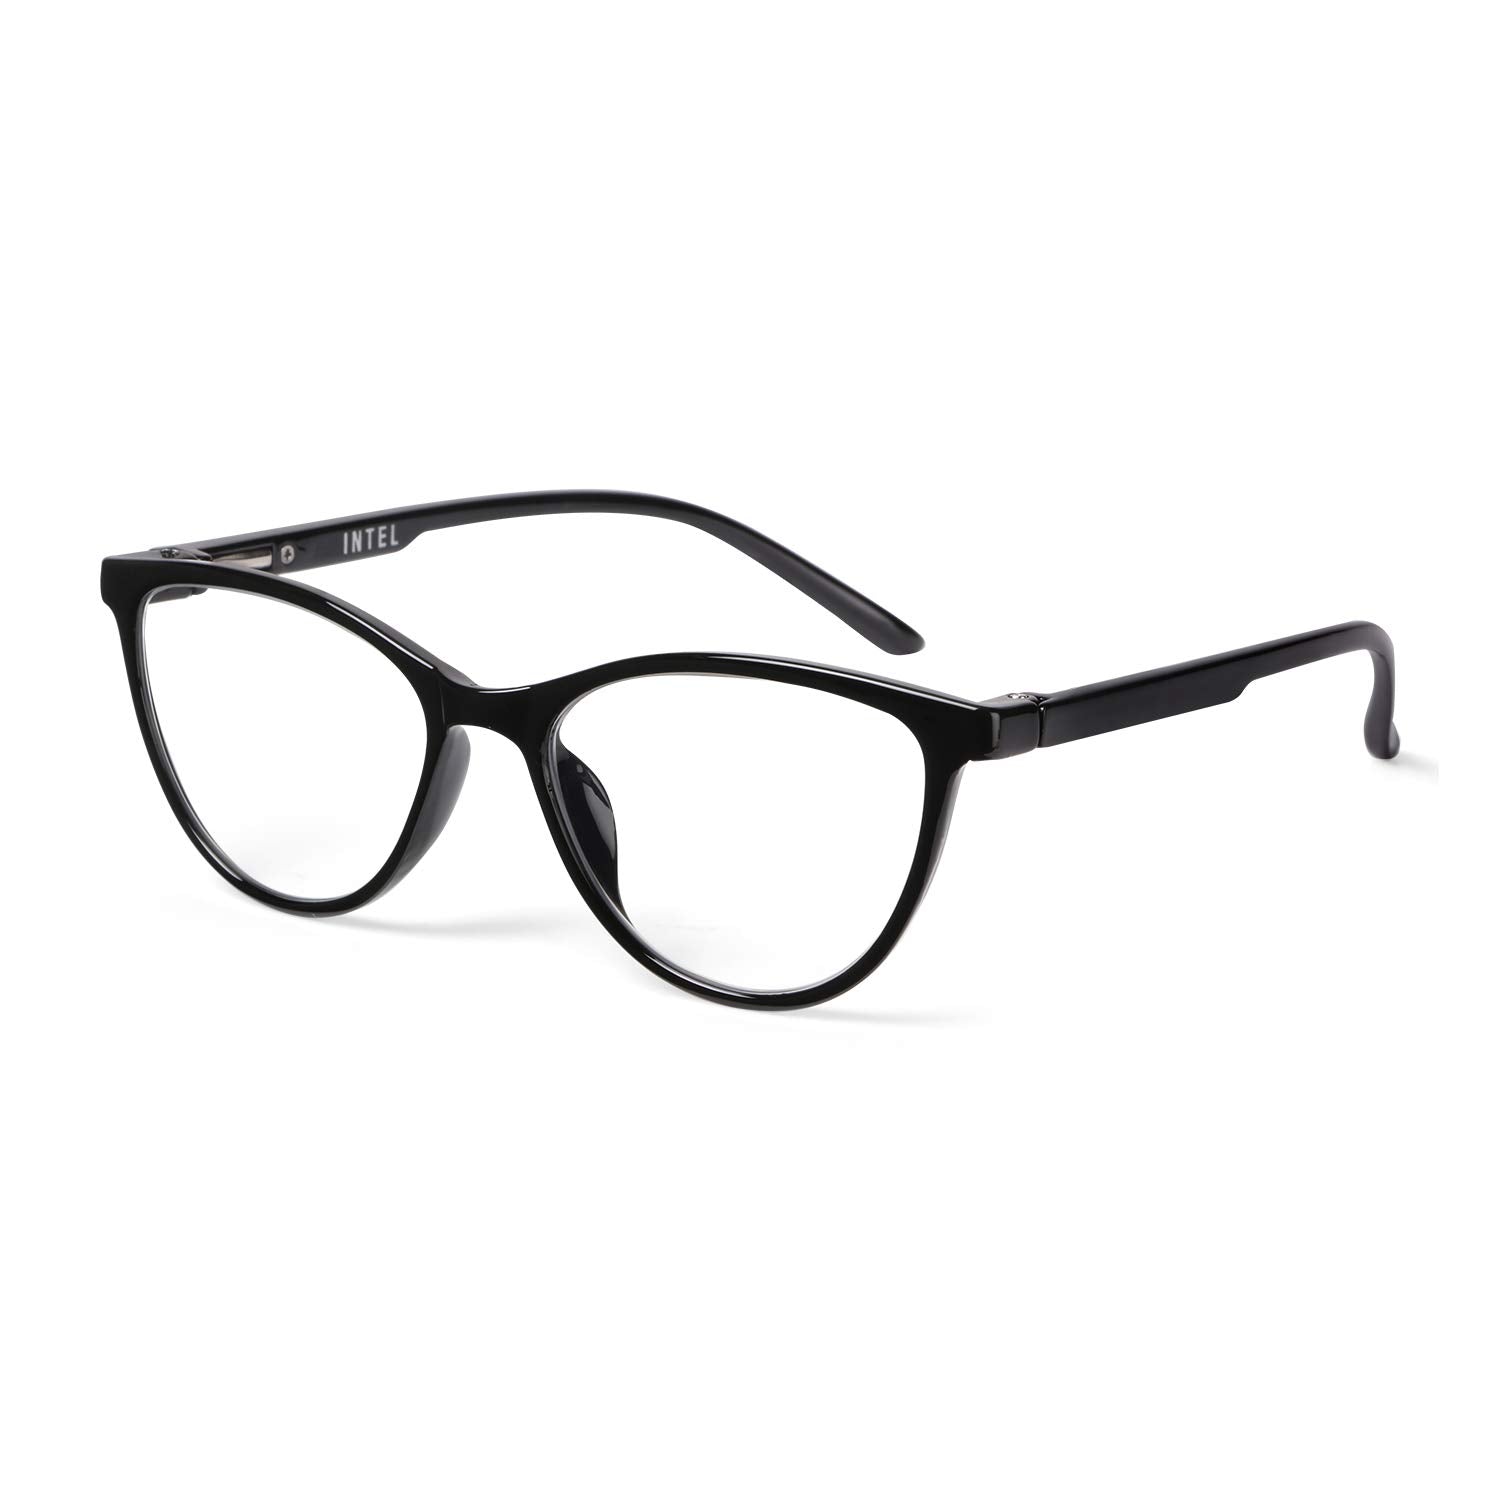 Dual Tone Cat Eye Eyeglasses Online-53714 